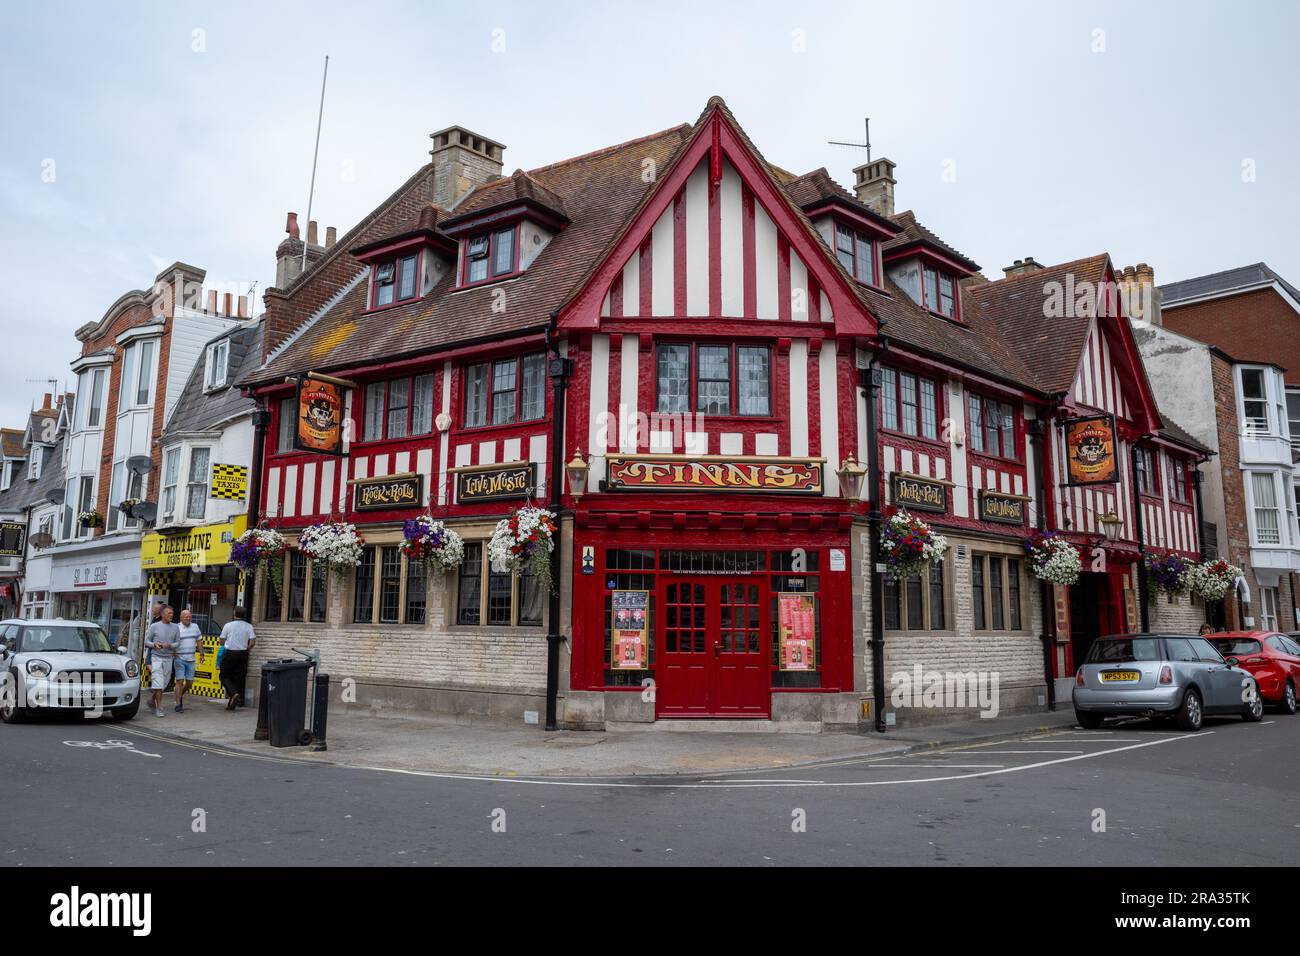 Finns pub, Weymouth, UK Stock Photo